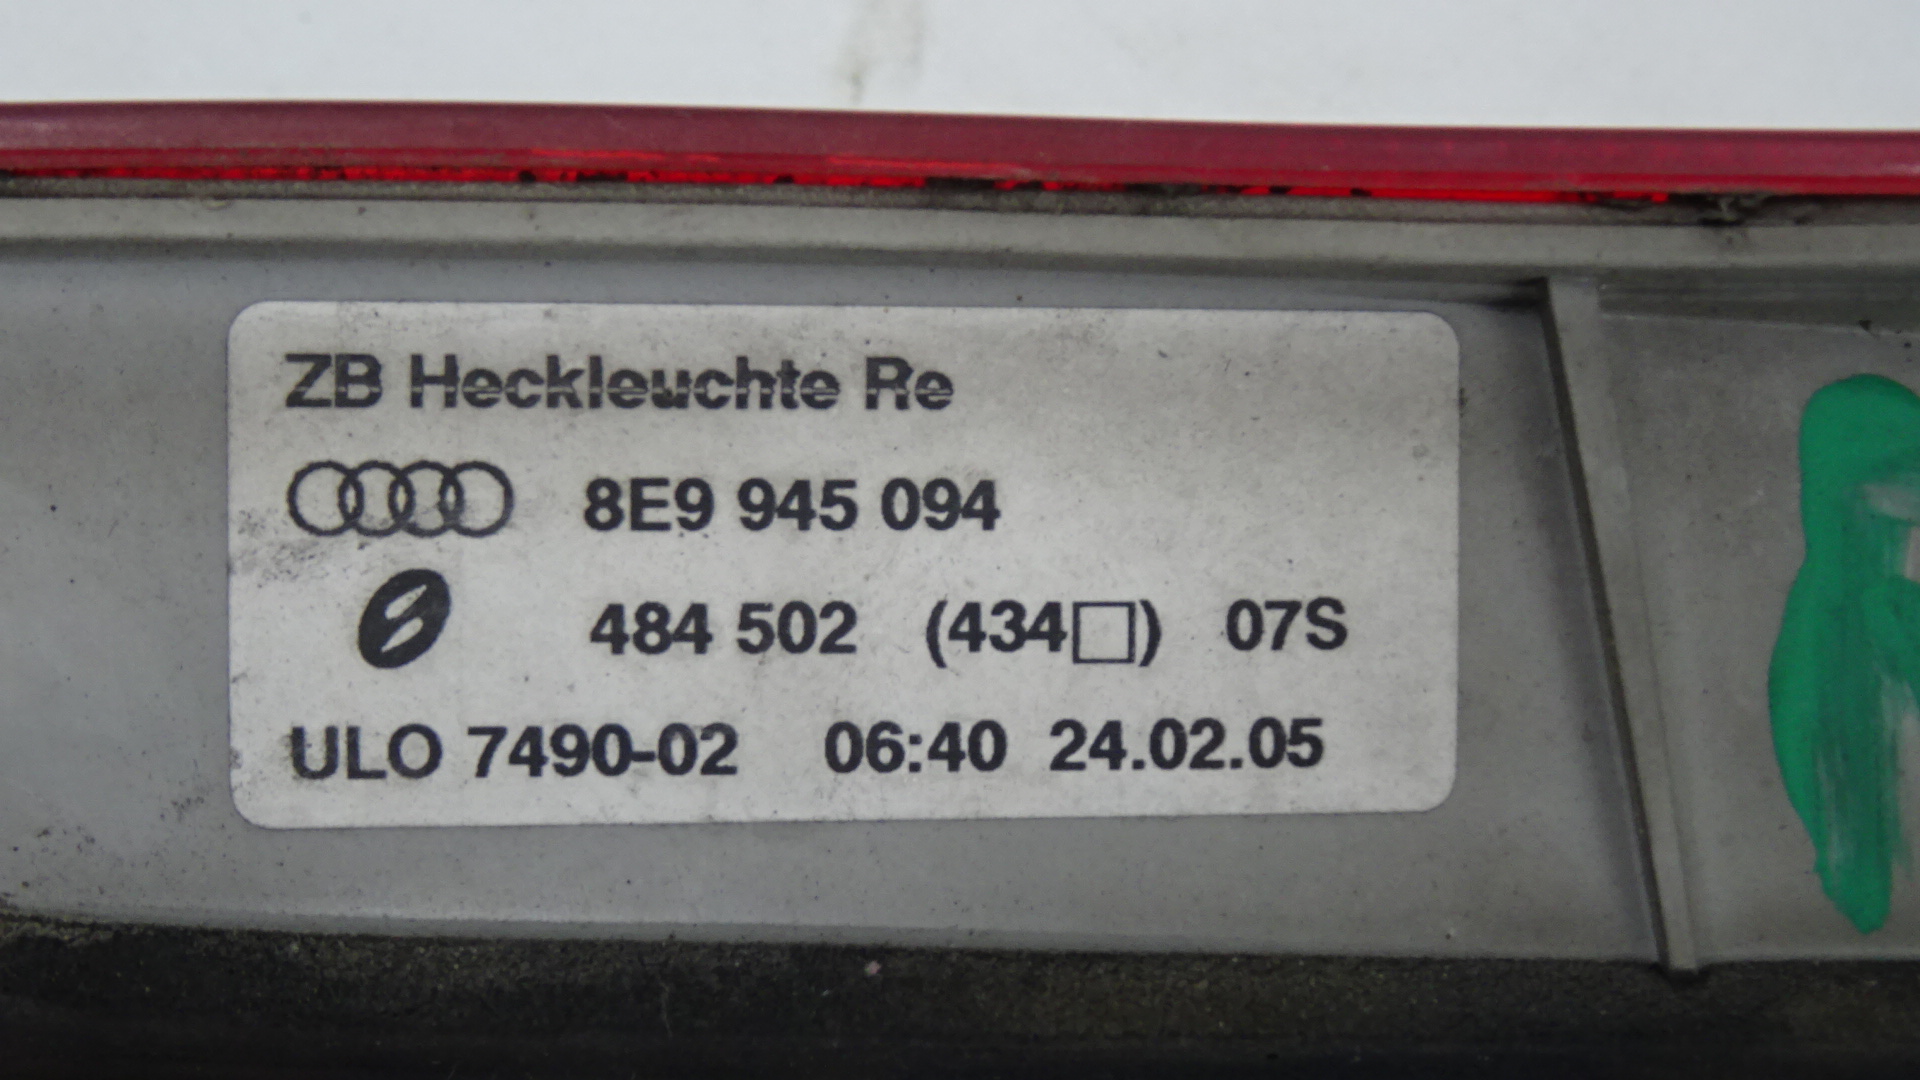 Audi A4 8E Avant Bj2005 Rückleuchte Rücklicht innen rechts 8E9945094 484502